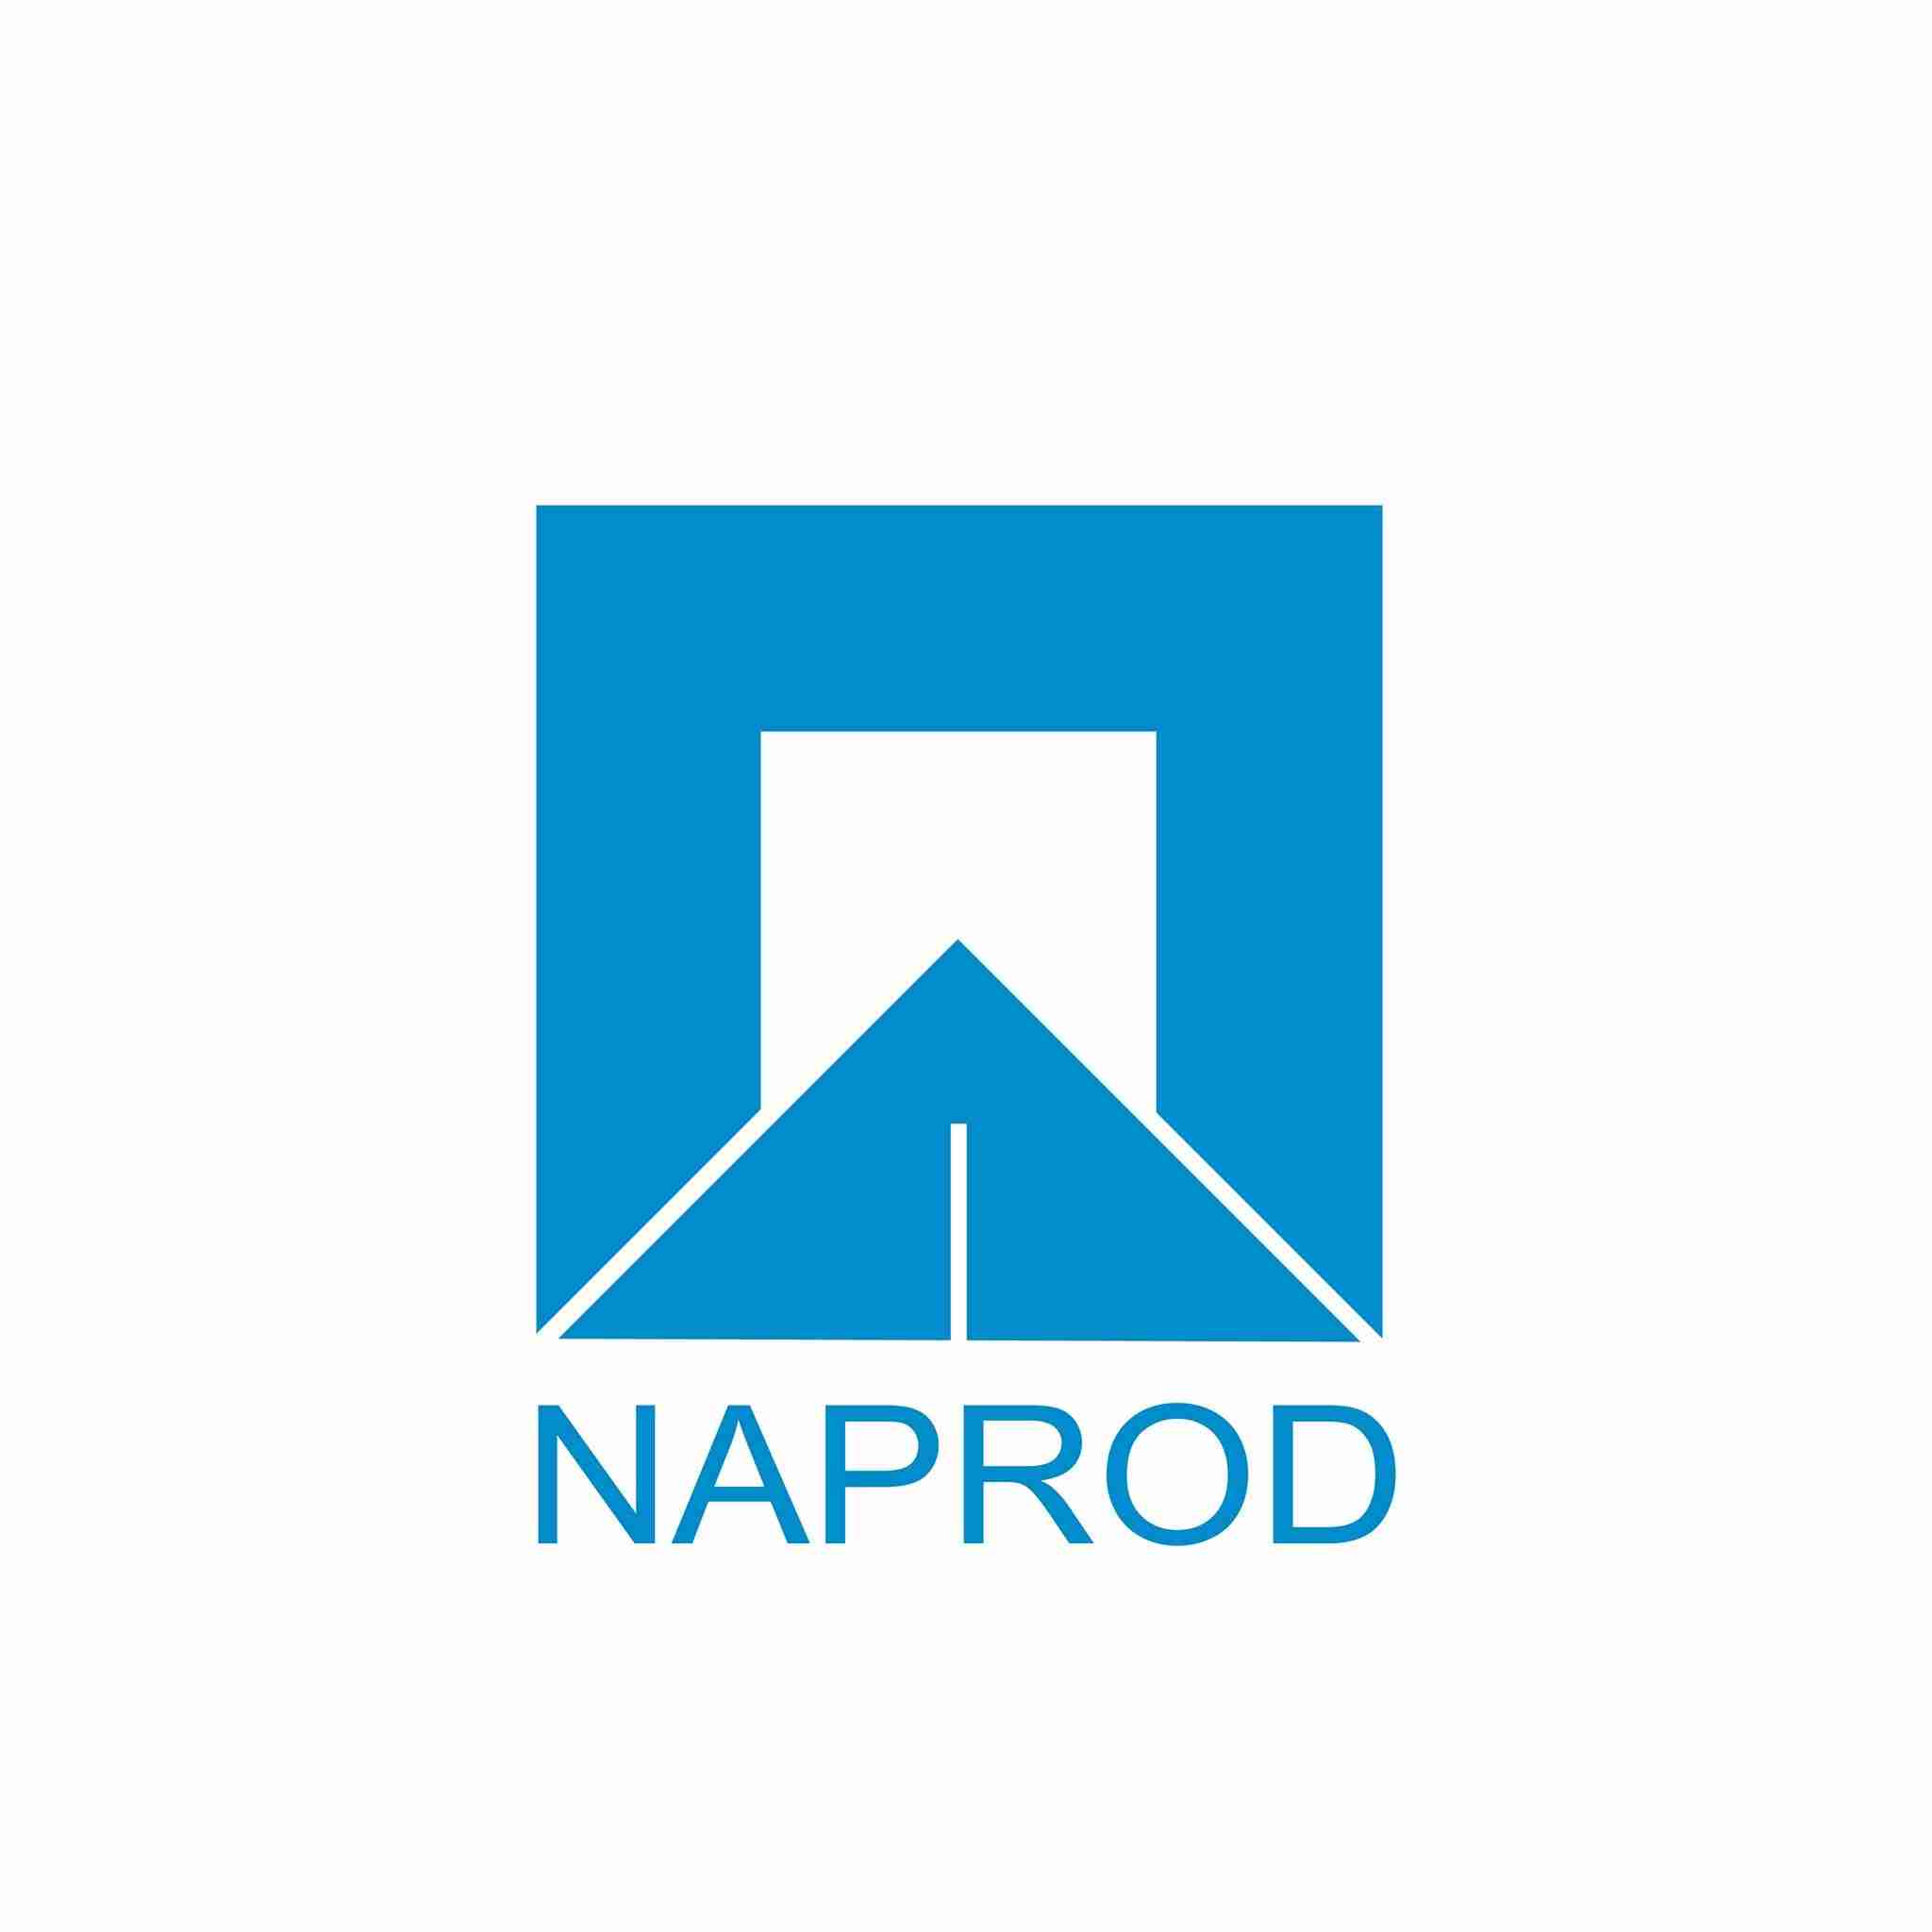 Naprod Group